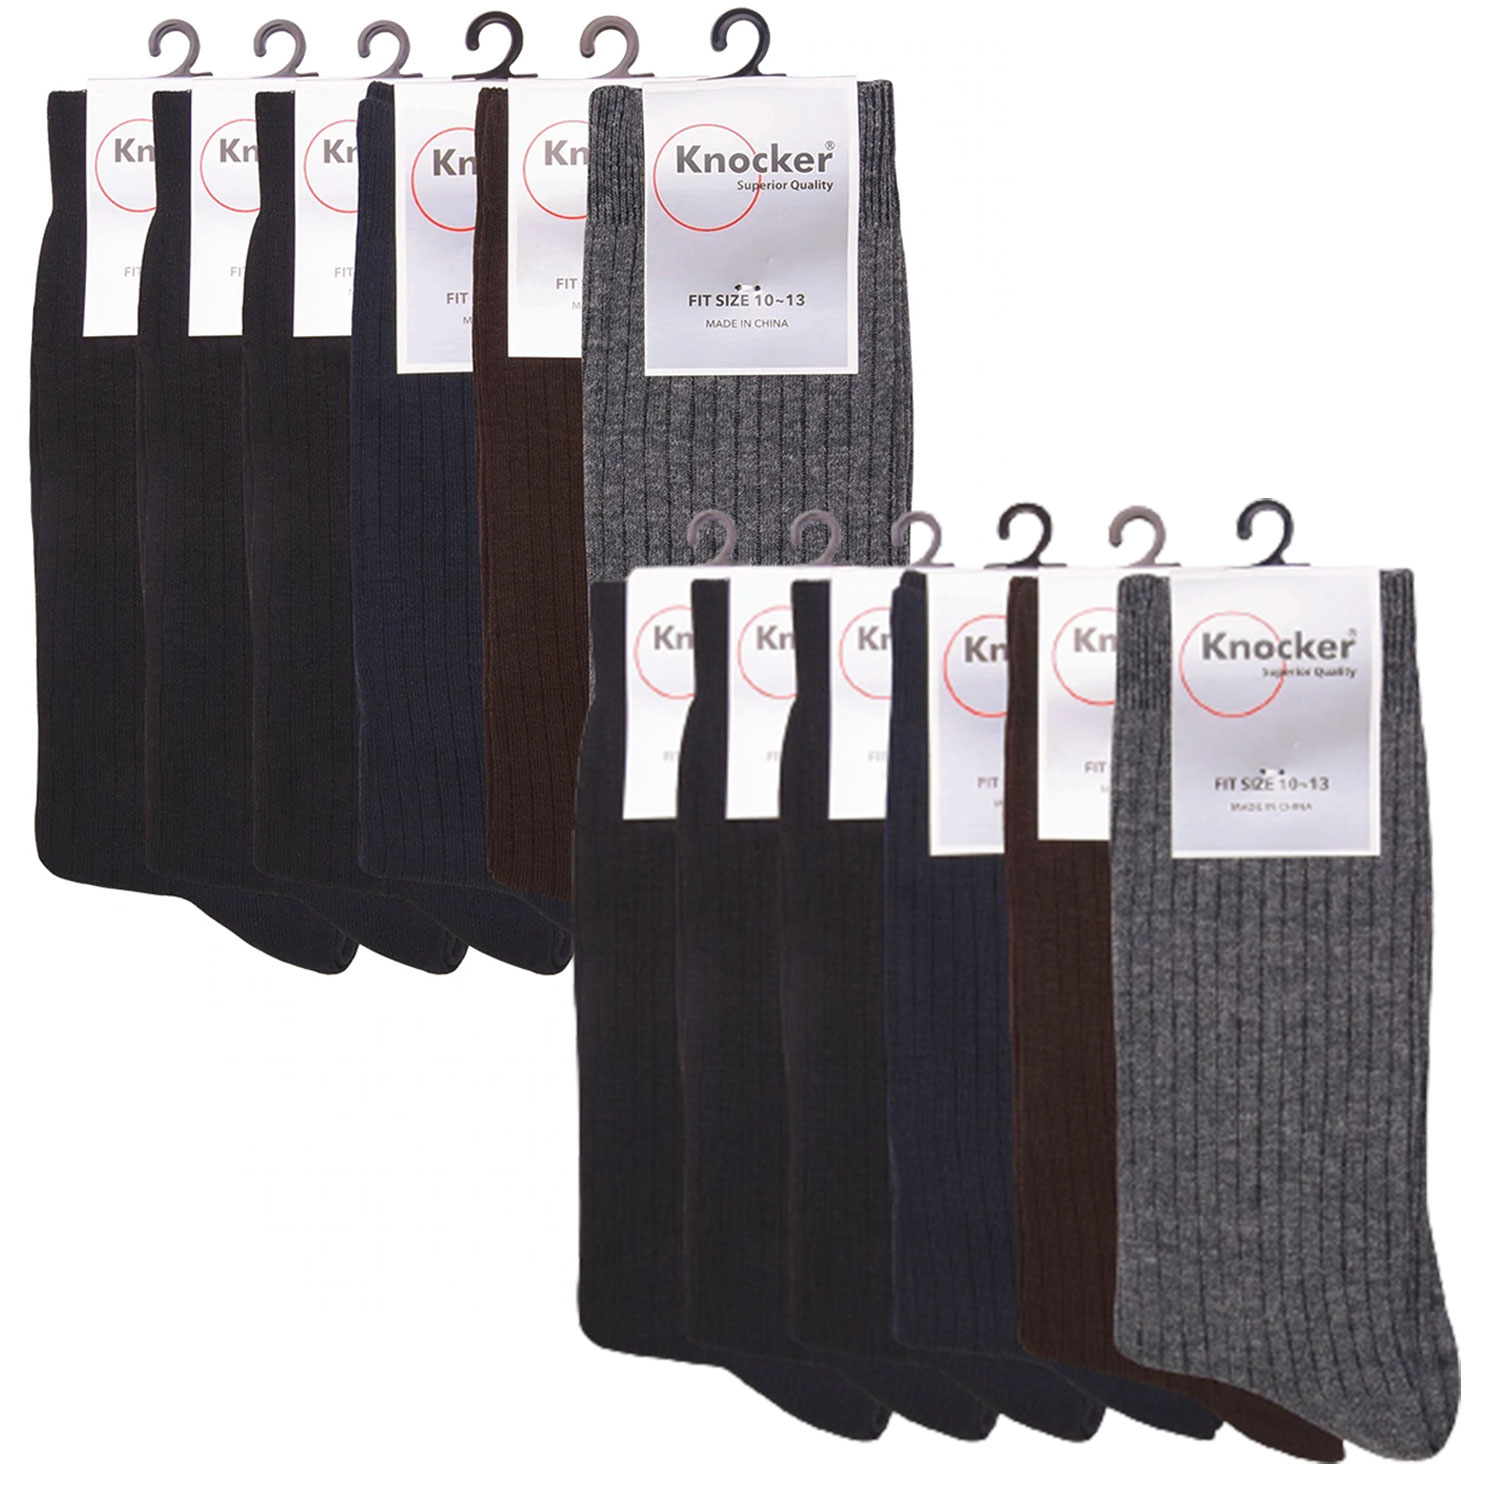 Knocker Men's Dress Socks Pack Of 12